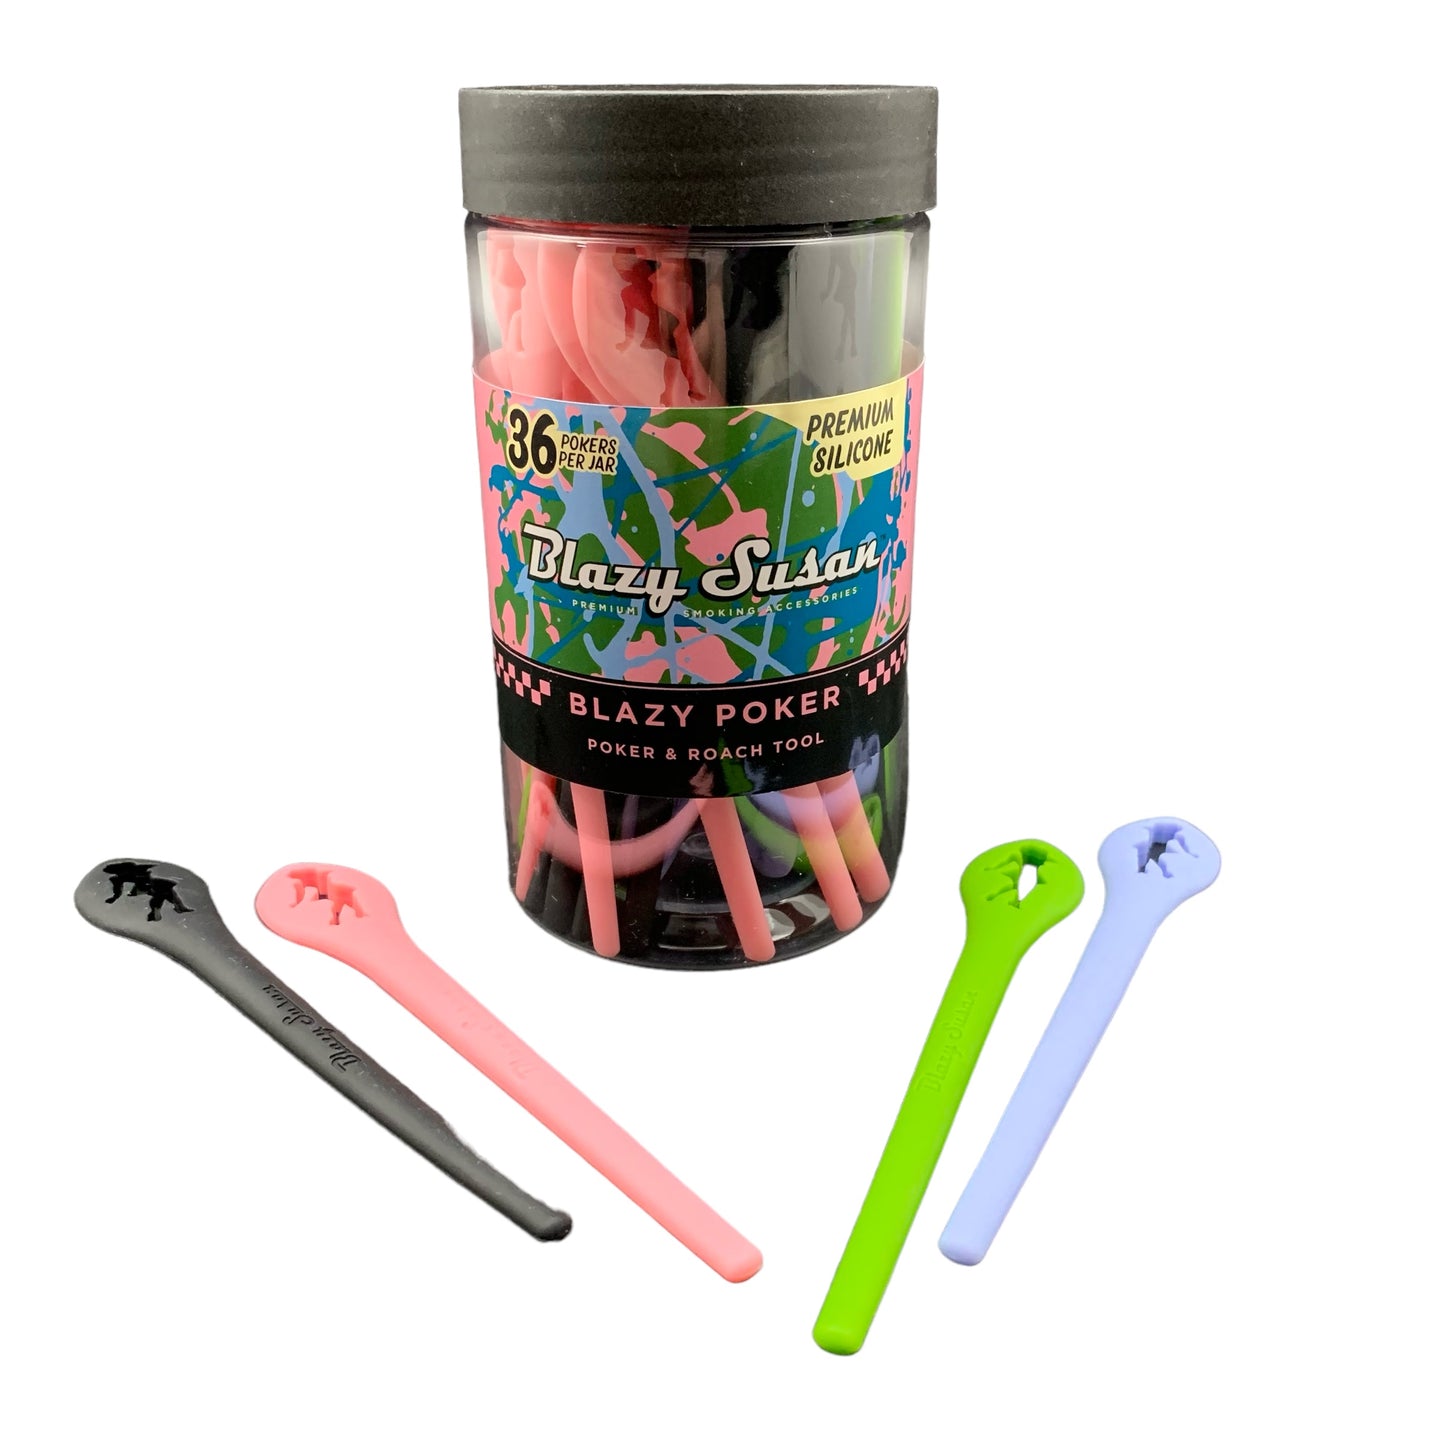 Blazy Susan Poker & Roach Tool- Mixed Colors, 36 Per Jar (B2B)